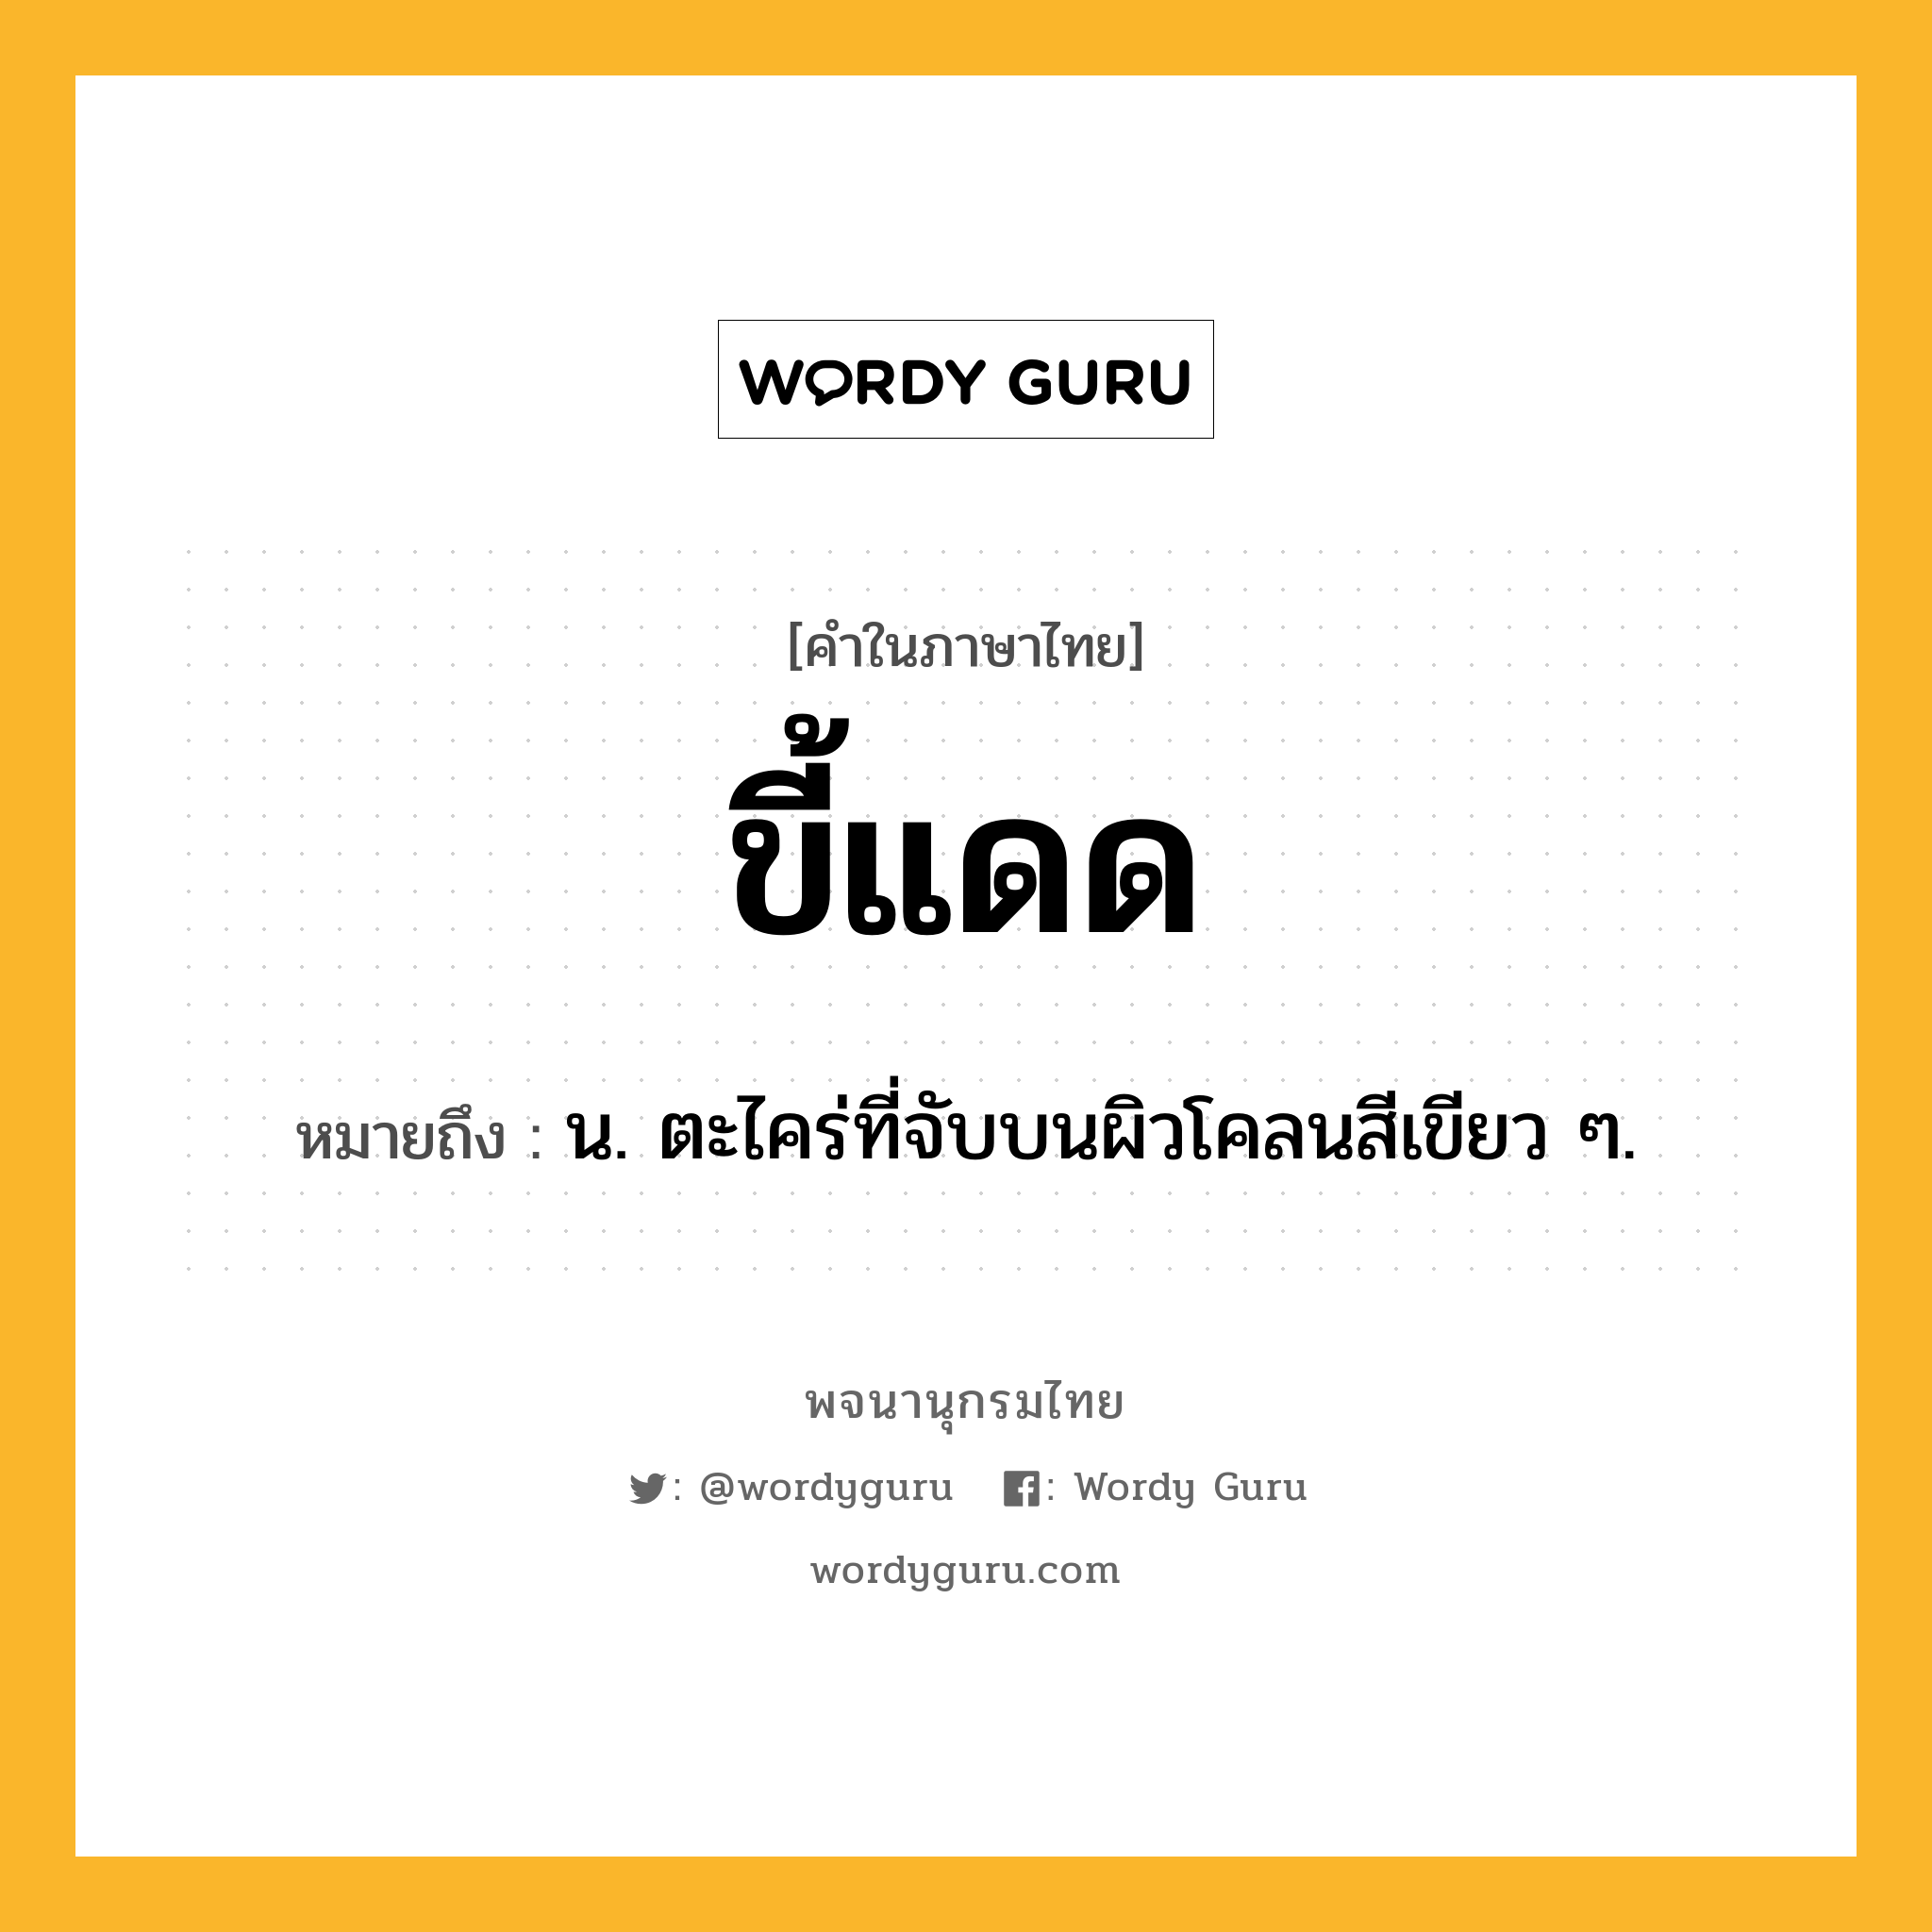 ขี้แดด ความหมาย หมายถึงอะไร?, คำในภาษาไทย ขี้แดด หมายถึง น. ตะไคร่ที่จับบนผิวโคลนสีเขียว ๆ.